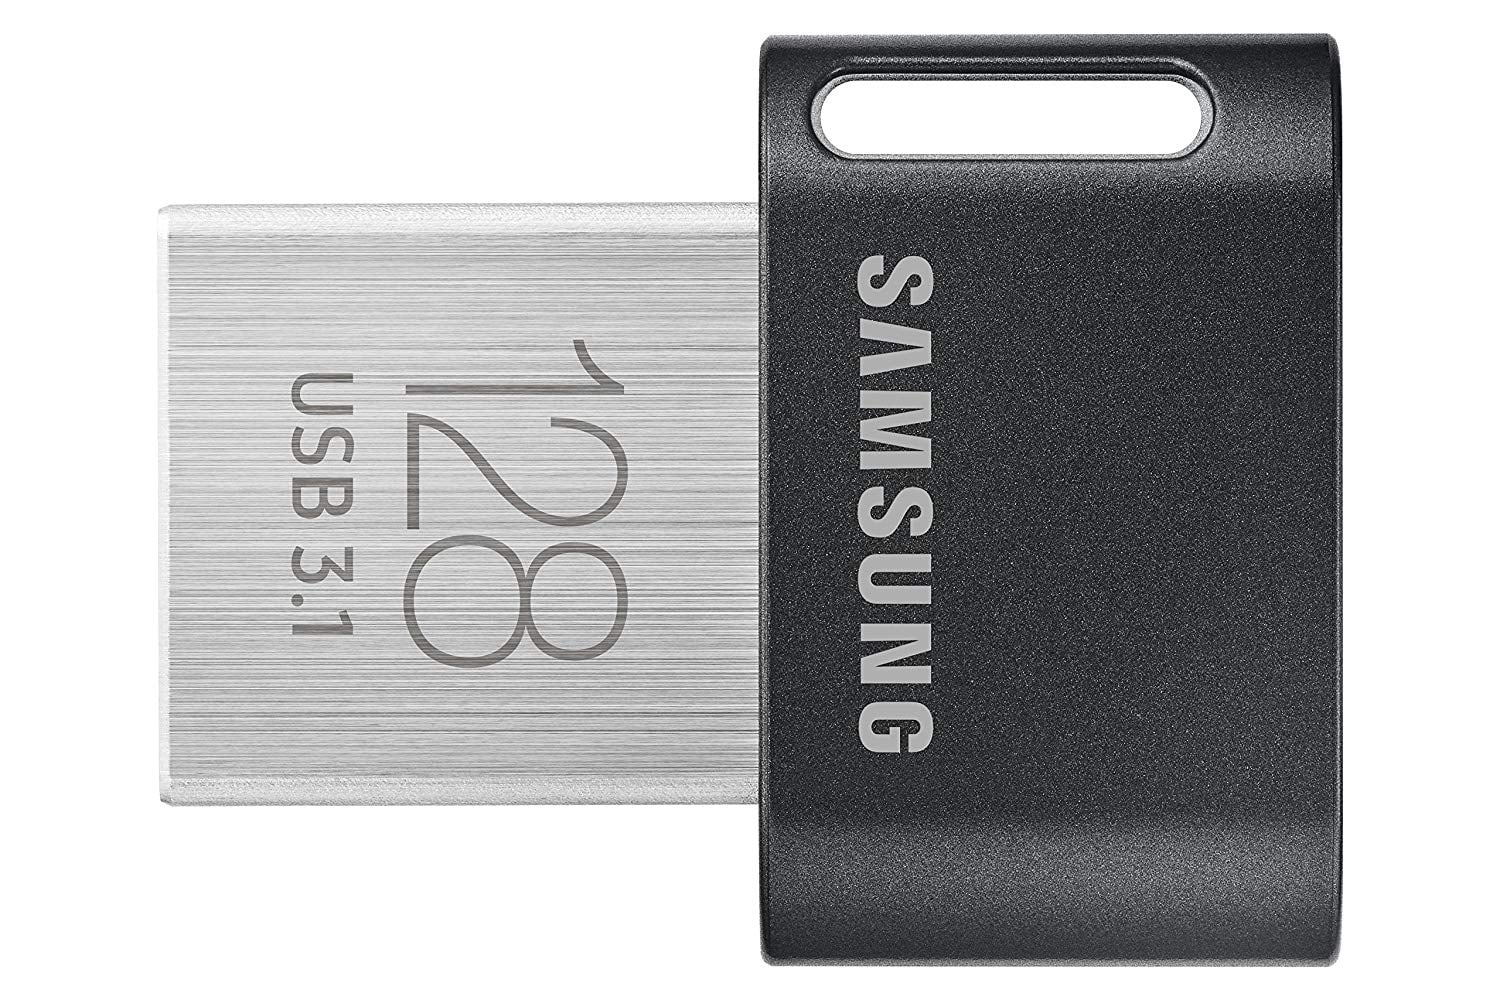 Silver 128GB UPSTONE 128GB USB 3.0 Flash Drives Pen Drive Memory Stick Thumb Drive USB Drives